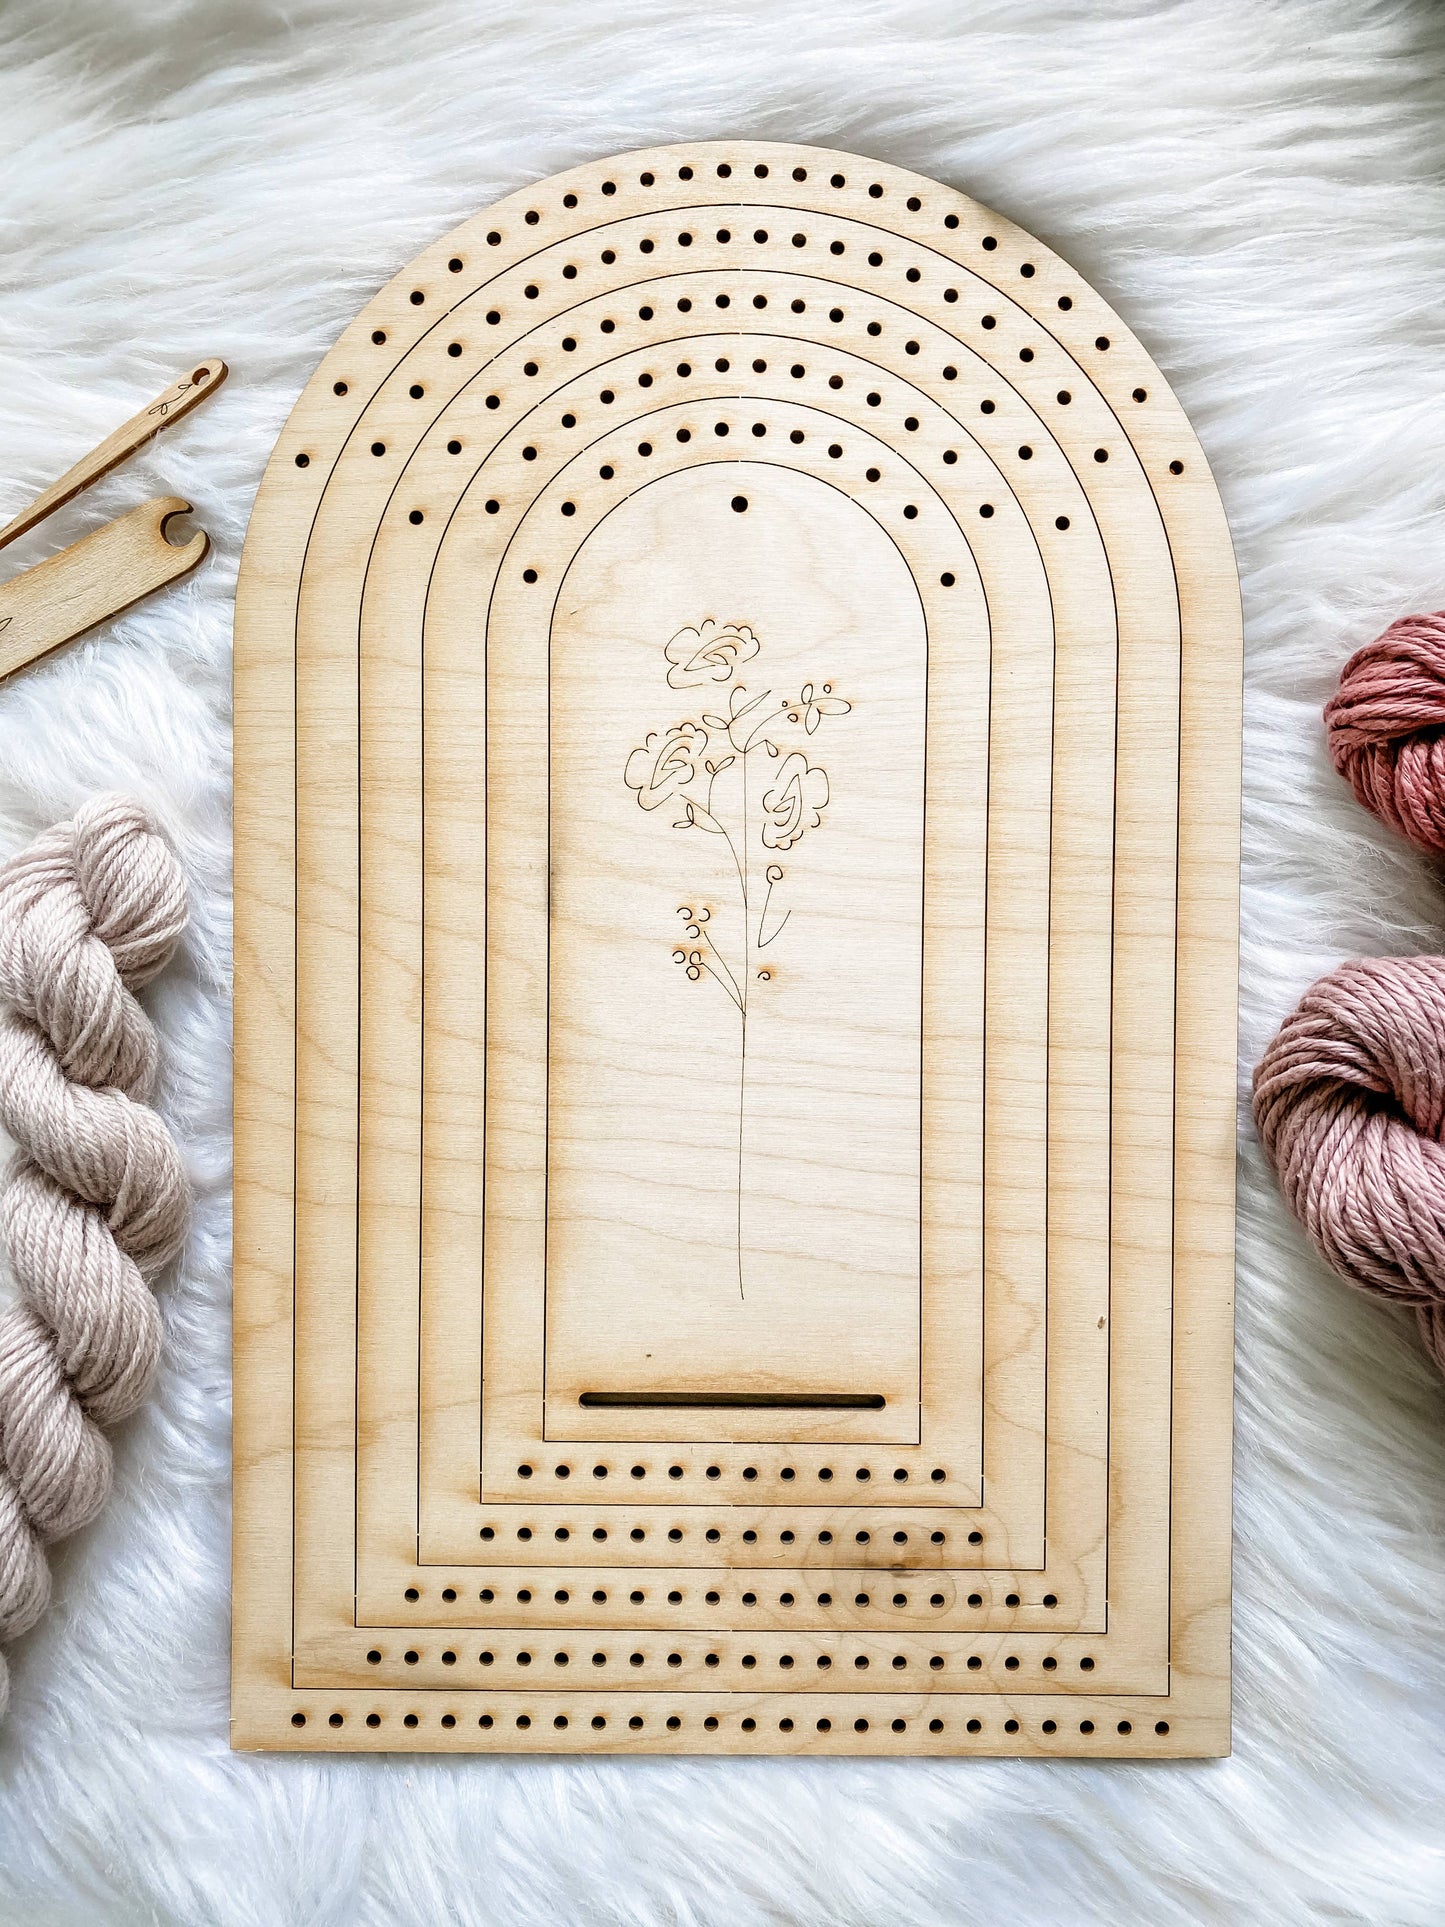 Weaving Loom Set